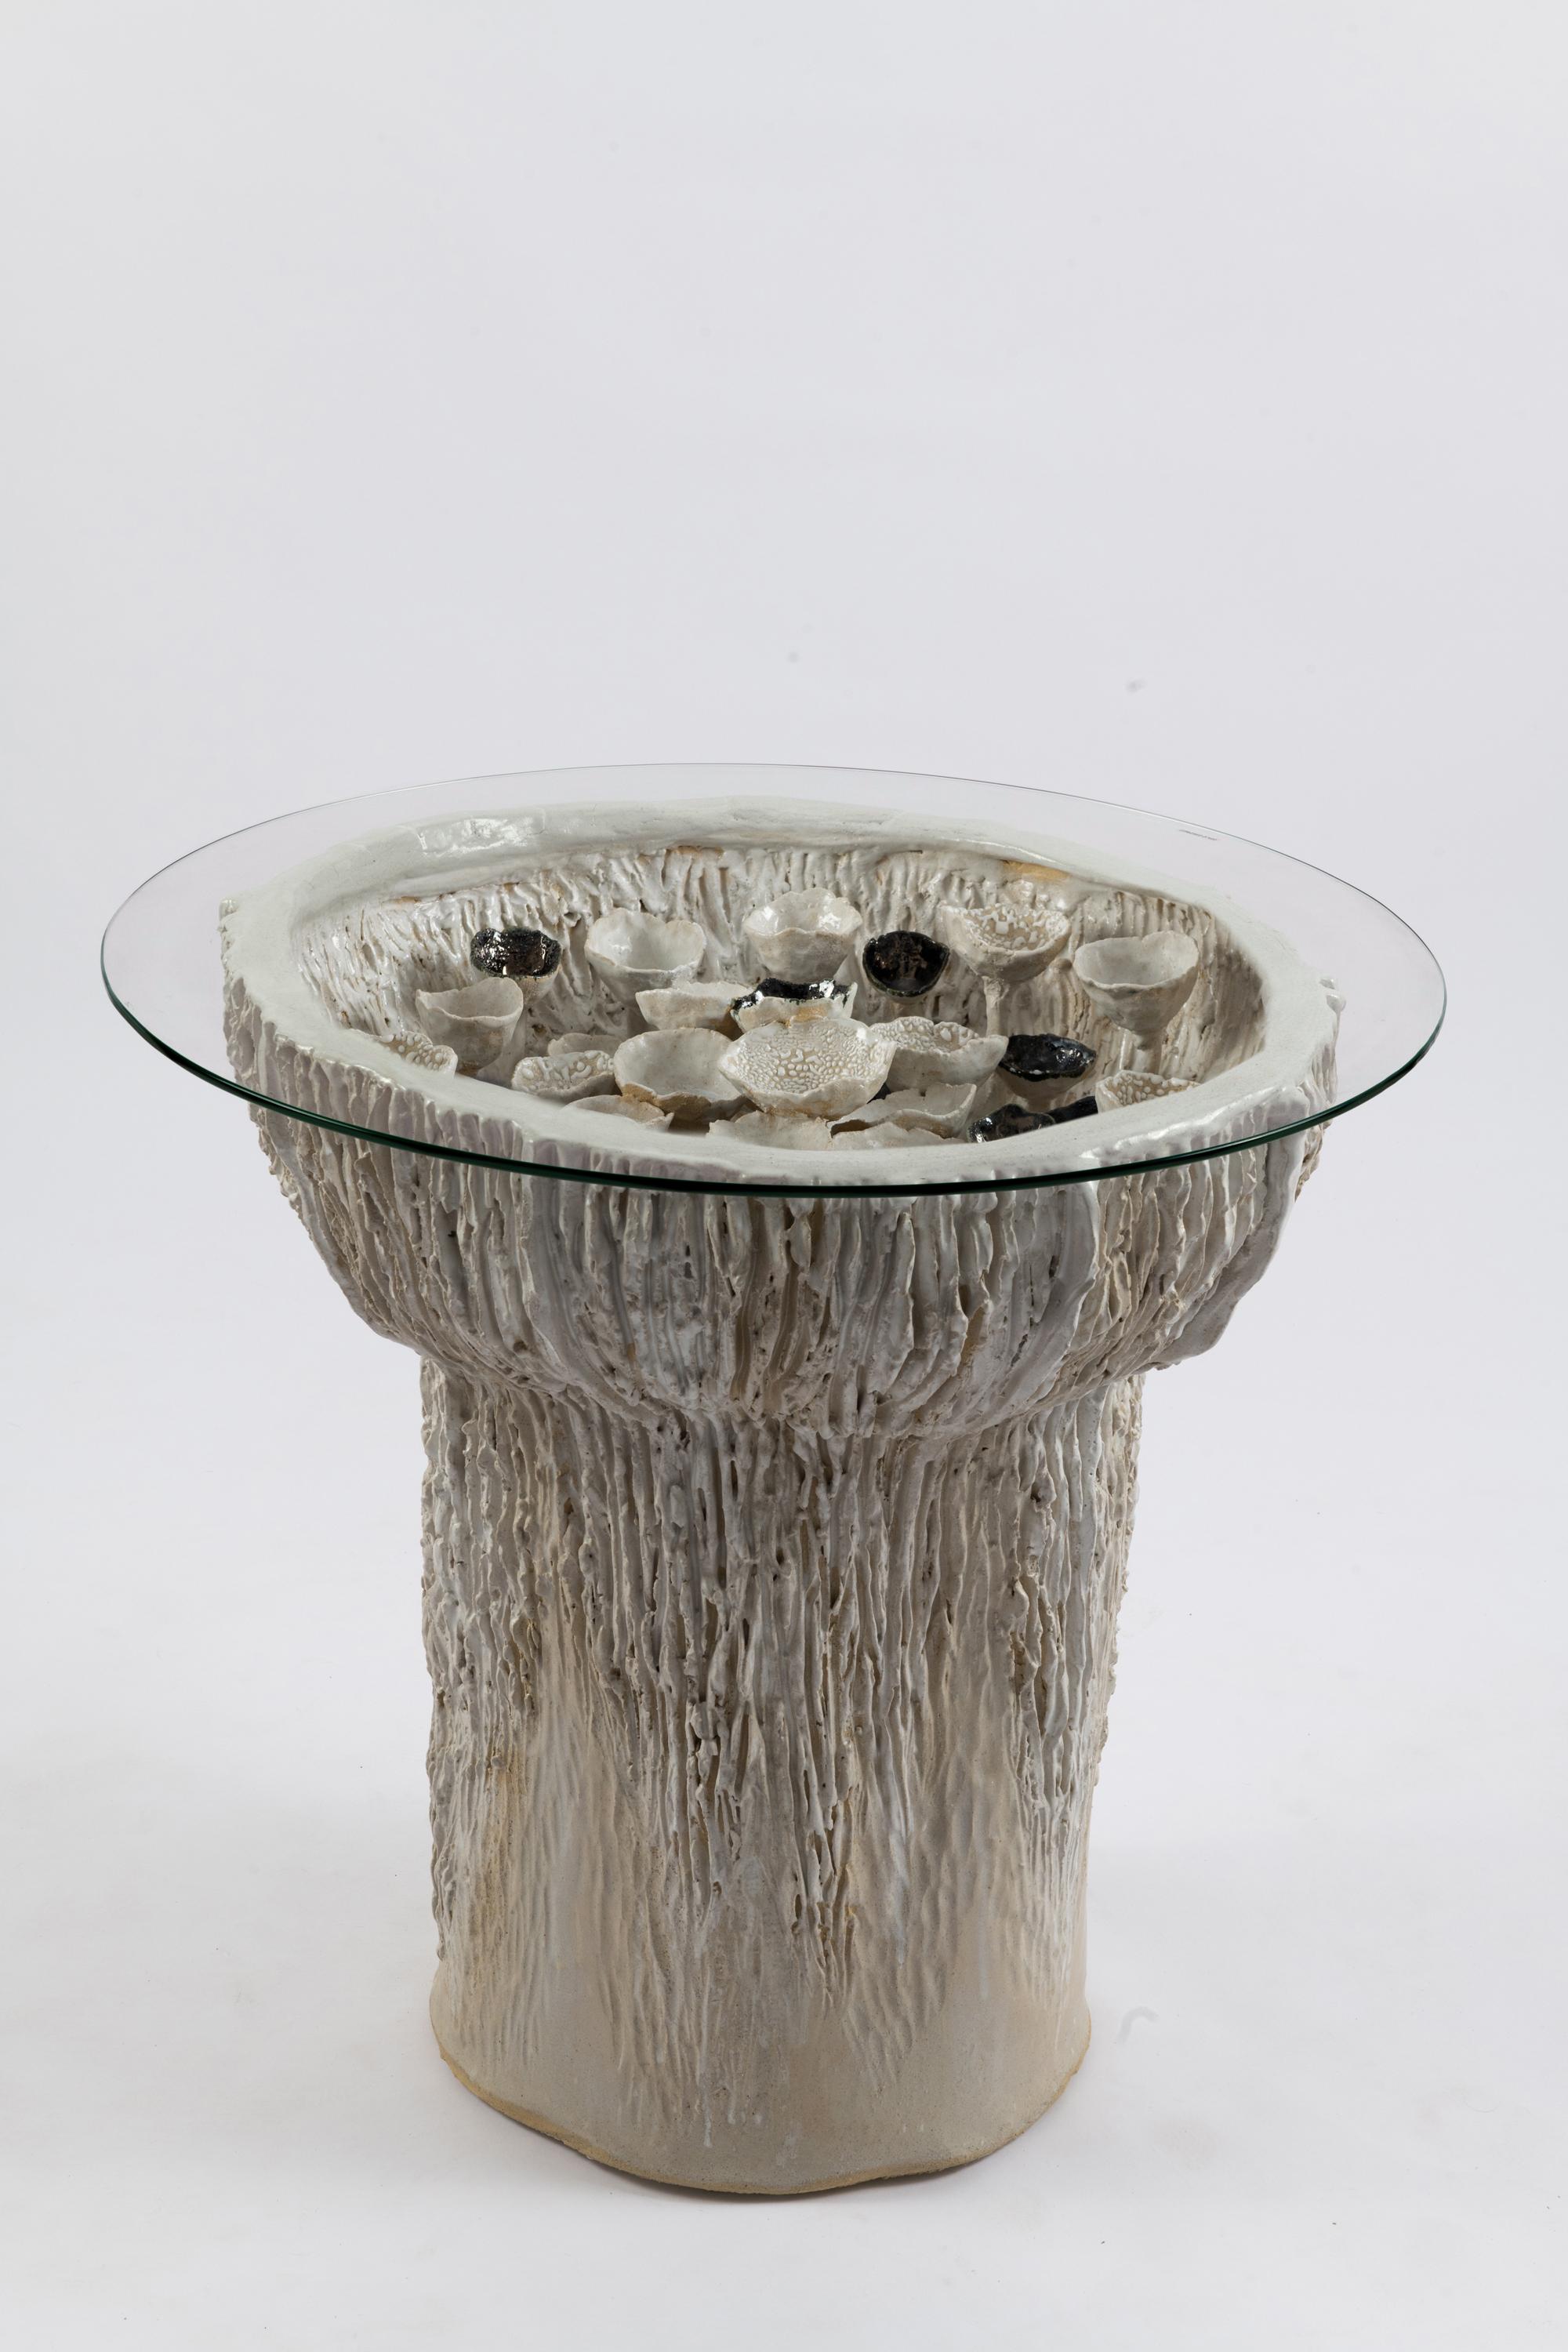 Trish DeMasi
Trombetta Tisch, 2021
Glasierte Keramik und rohes gesprenkeltes Steingut mit Glaseinlage
26 x 28 x 28 Zoll  
Oberteil: 28 x 28 Zoll; Unterteil: 25 x 25 in